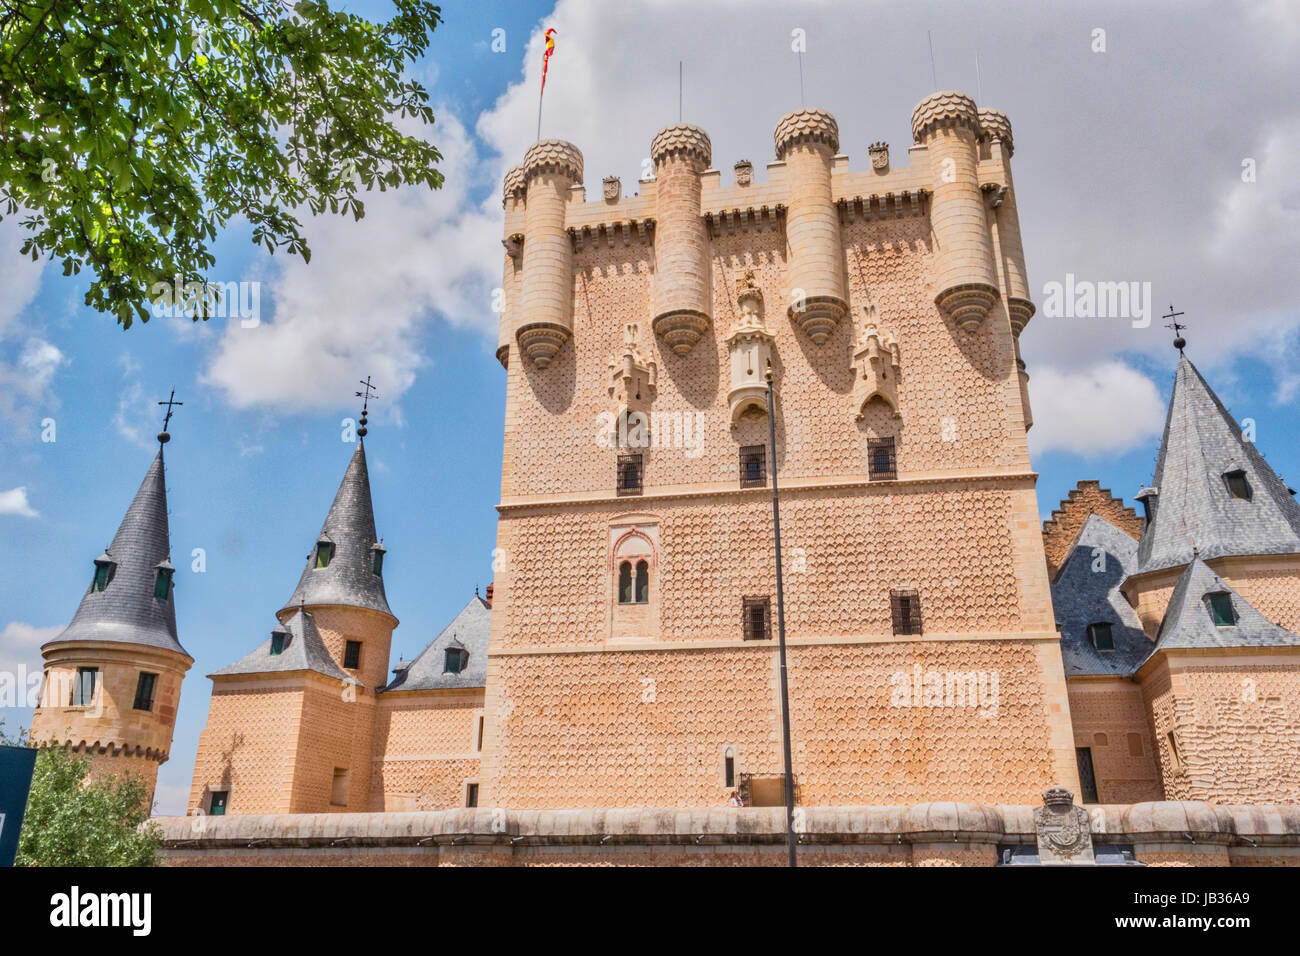 Segovia, Spanien - Juni 3: Teilansicht des Schlosses vom Eingang zum Denkmal und Zugbrücke, Juan II Turm erhebt sich auf einer felsigen Klippe, gebaut Stockfoto